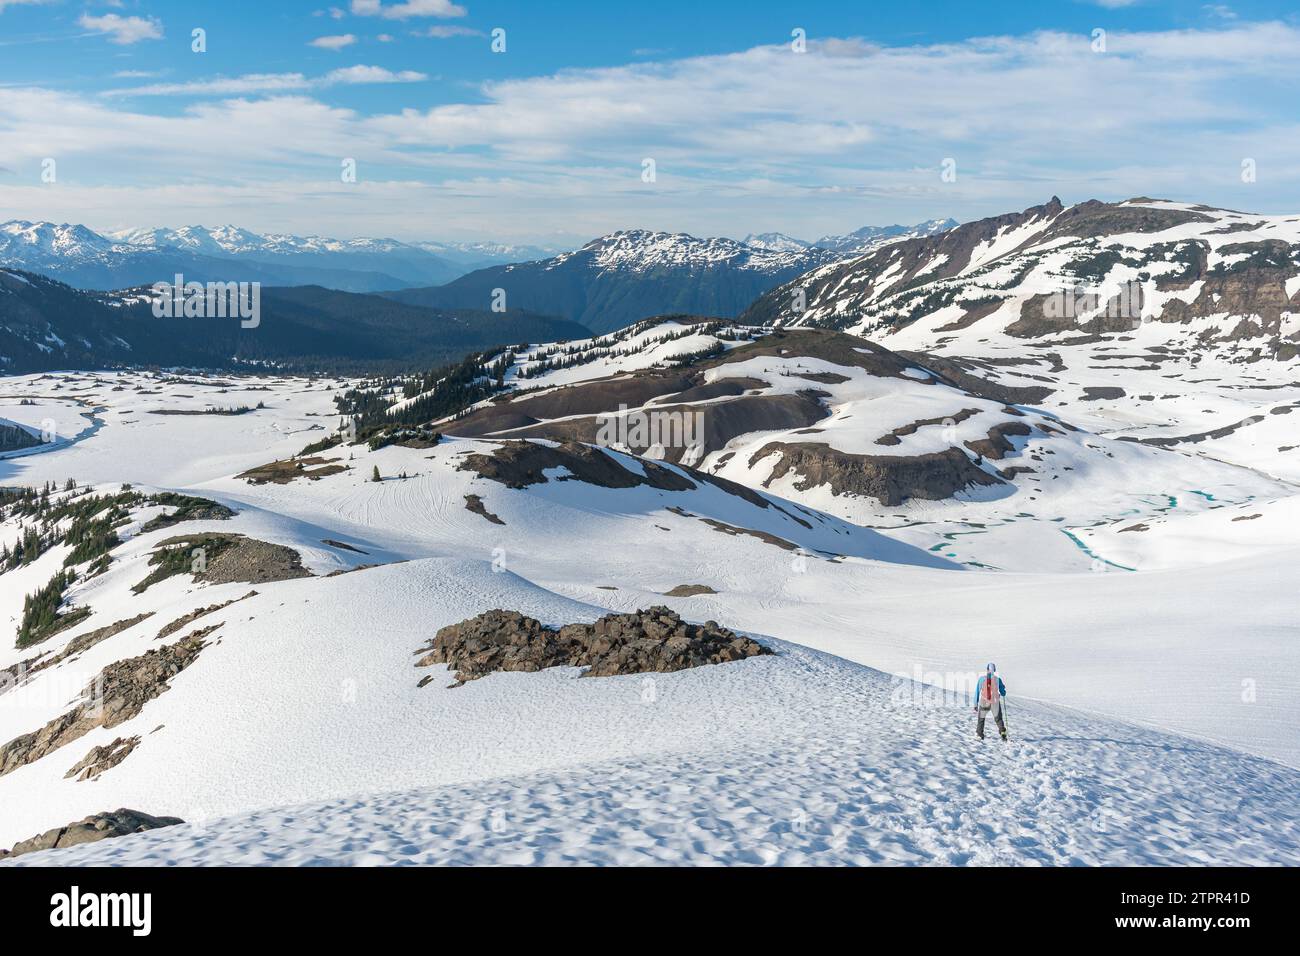 L'avventuriero scende sulle piste innevate di Panorama Ridge nella splendida British Columbia. Foto Stock